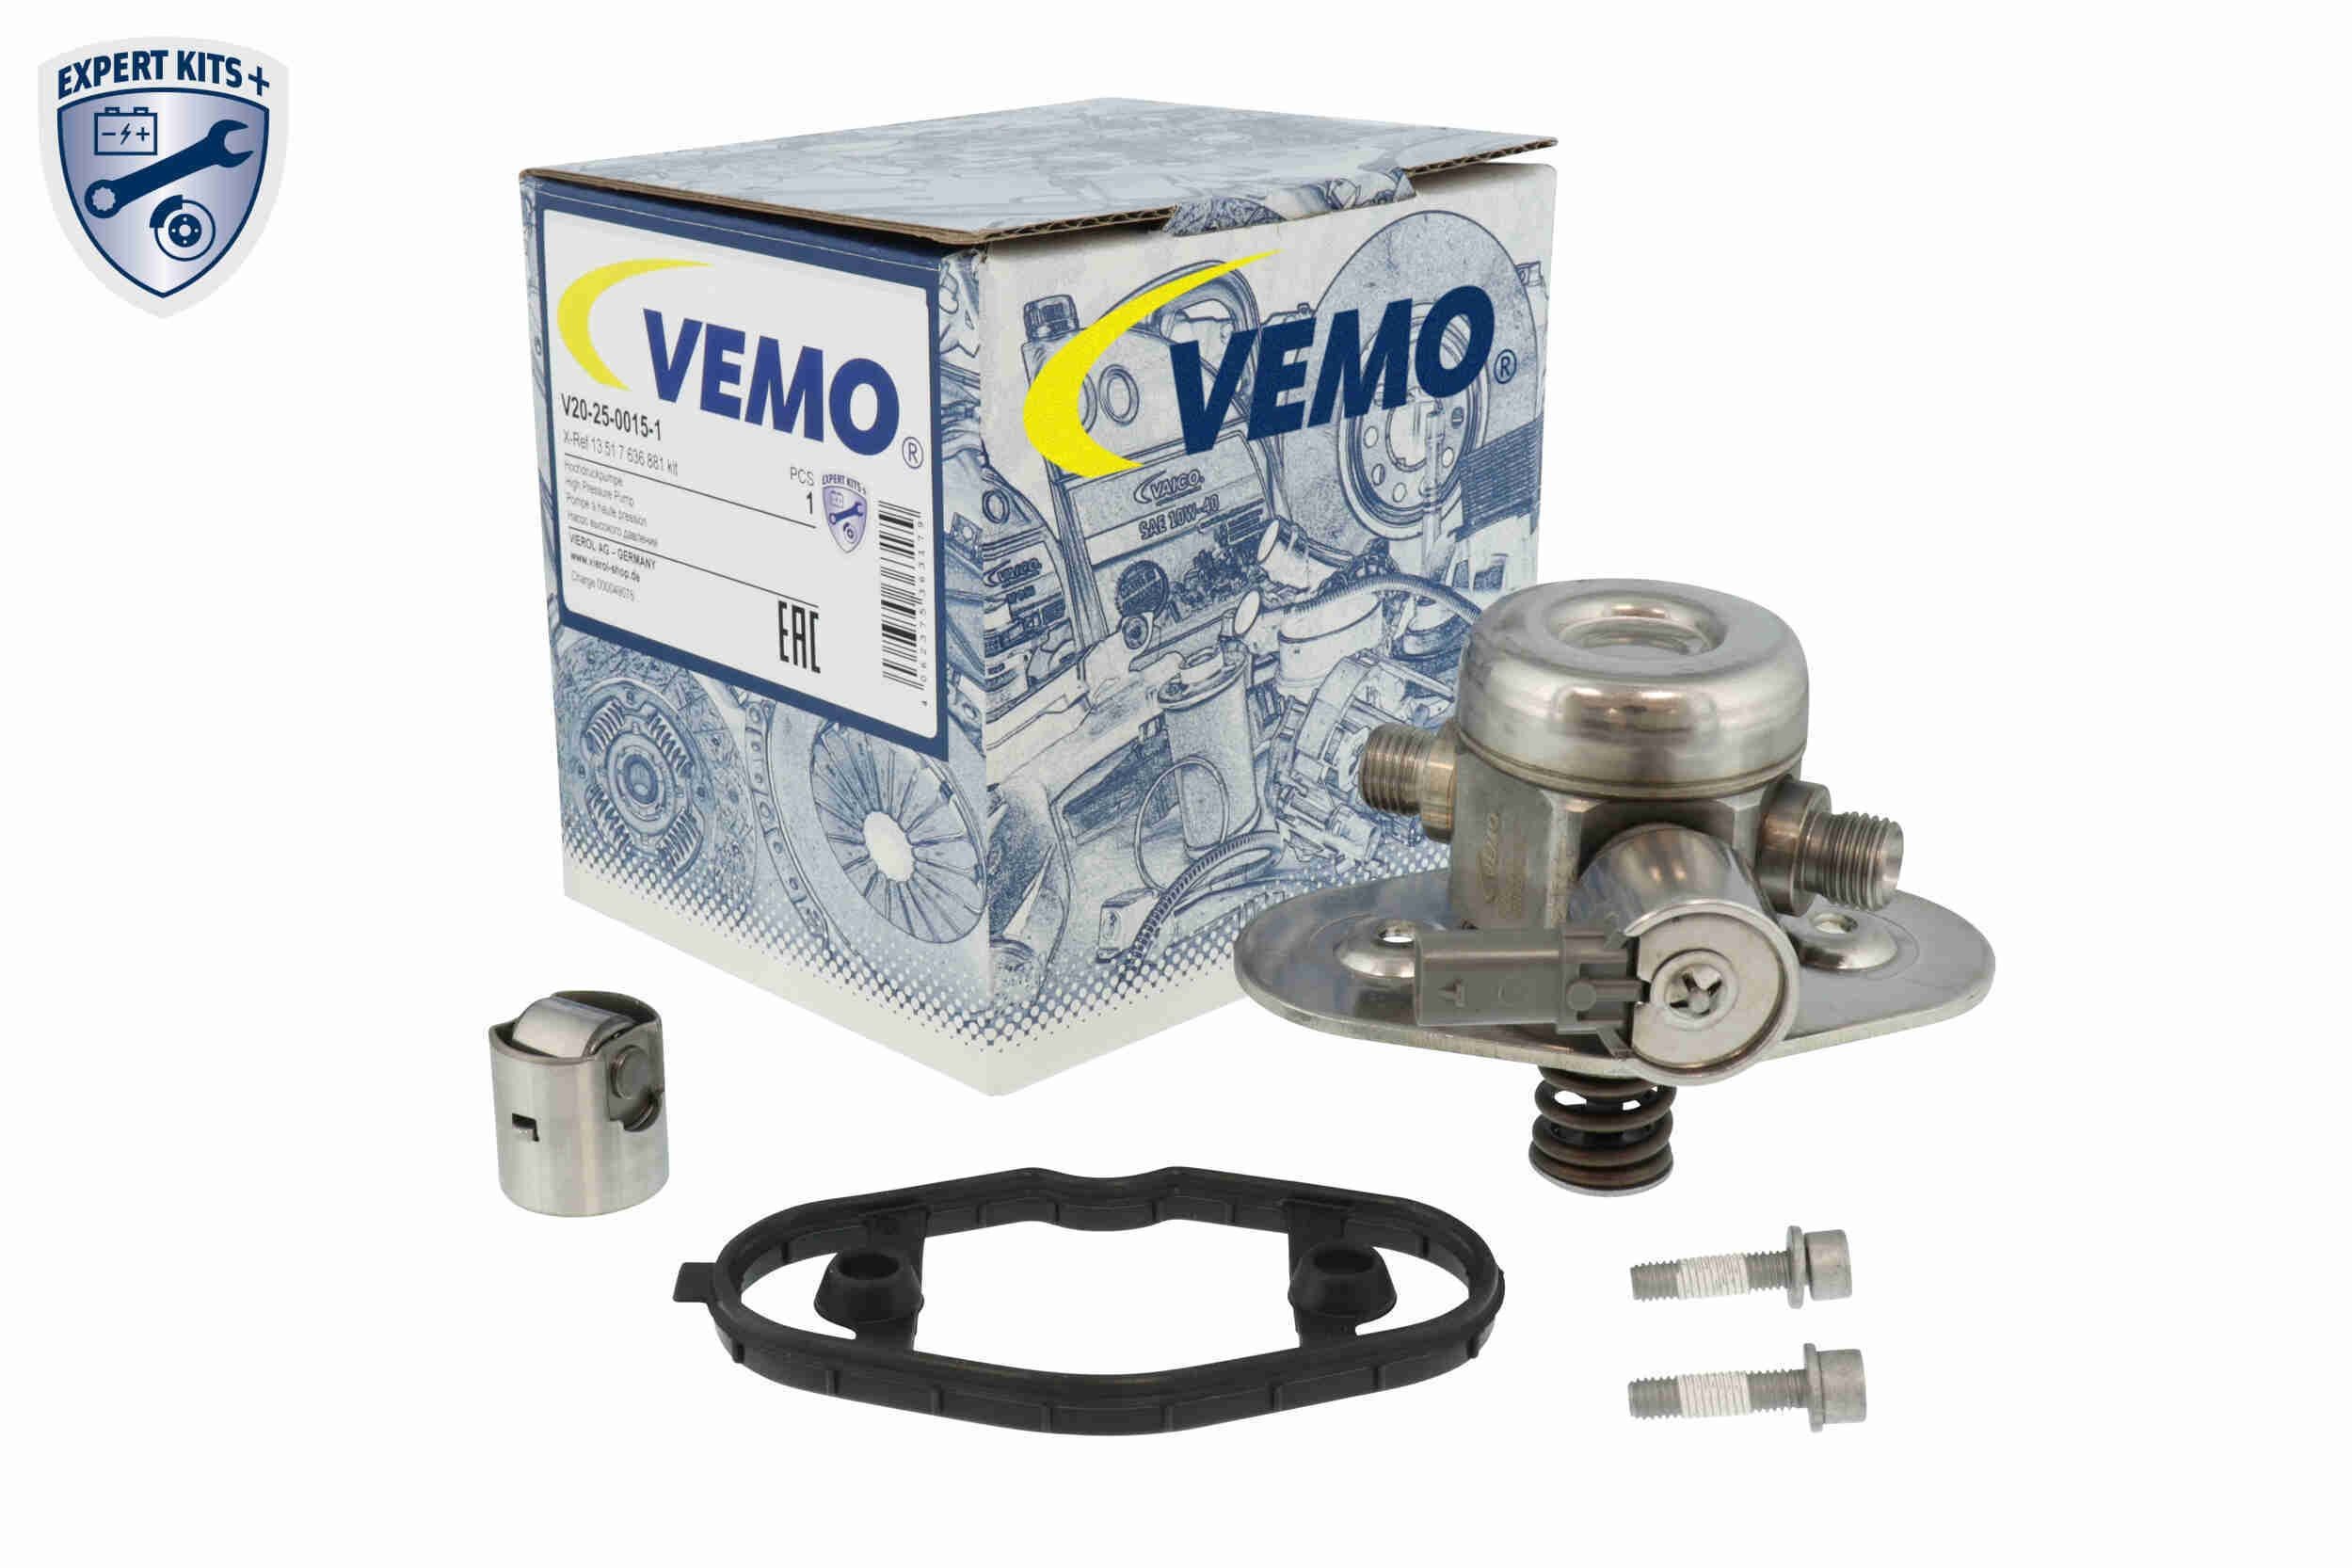 VEMO Fuel injection pump V20-25-0015-1